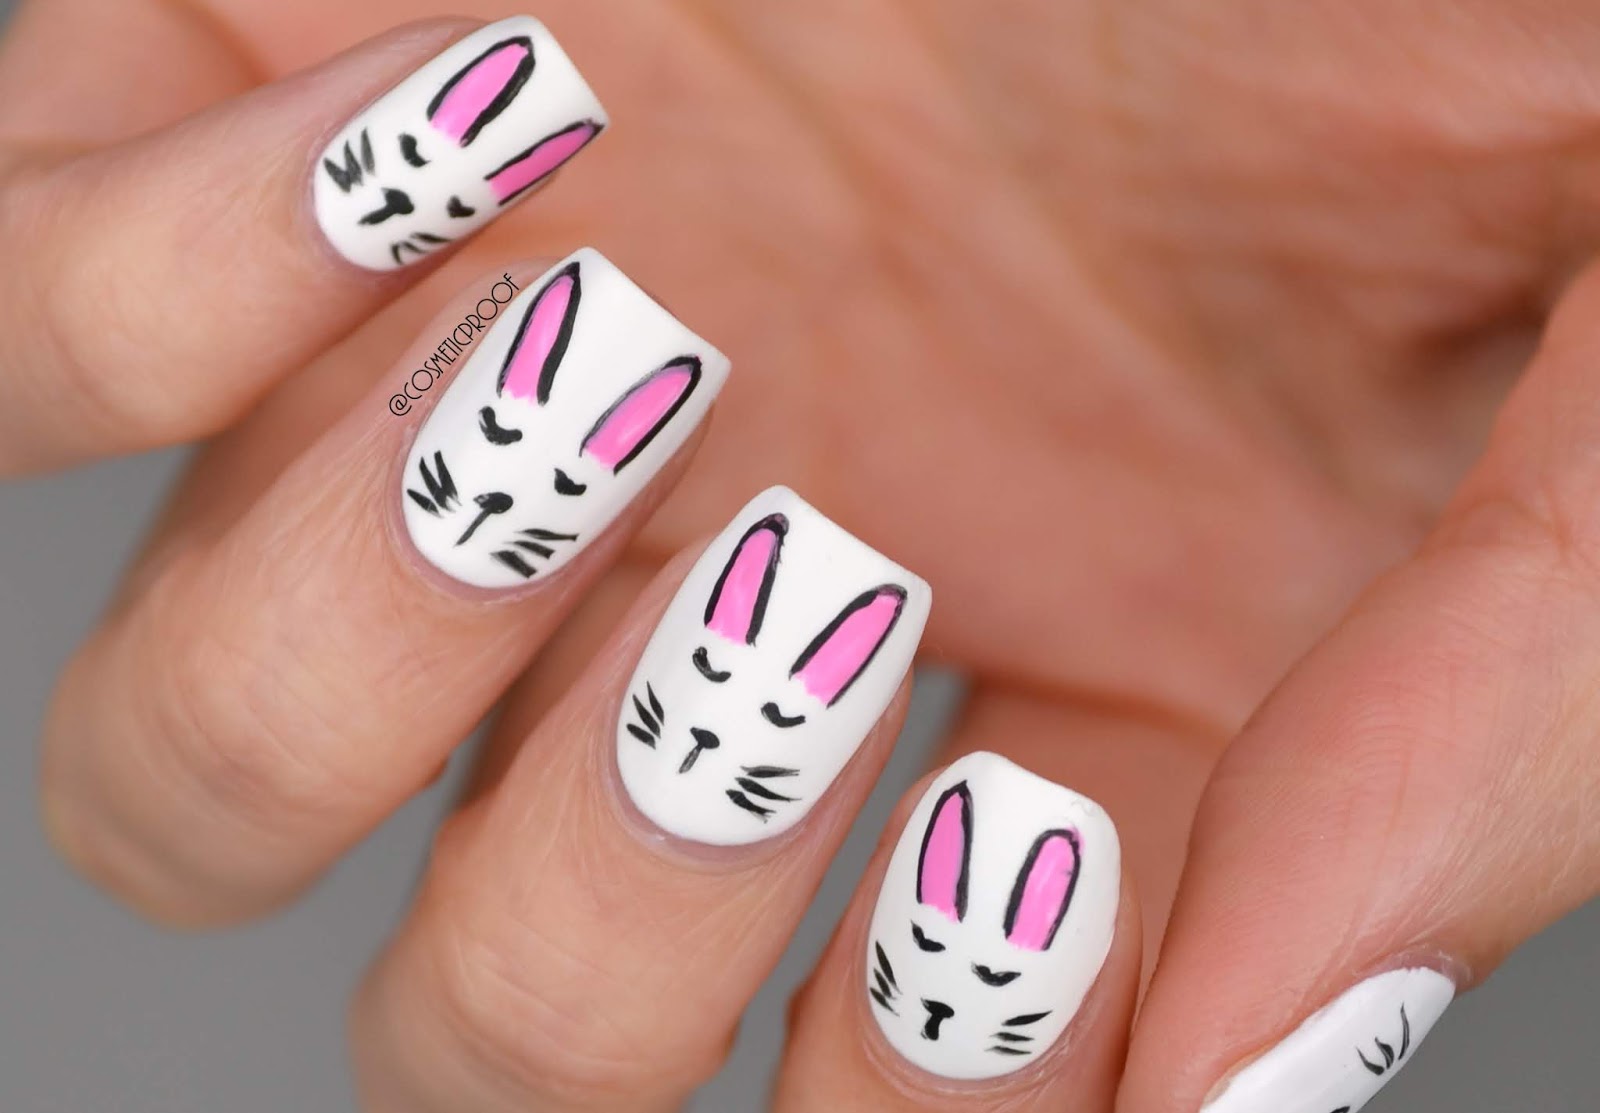 2. Glitter Bunny Nail Design - wide 3